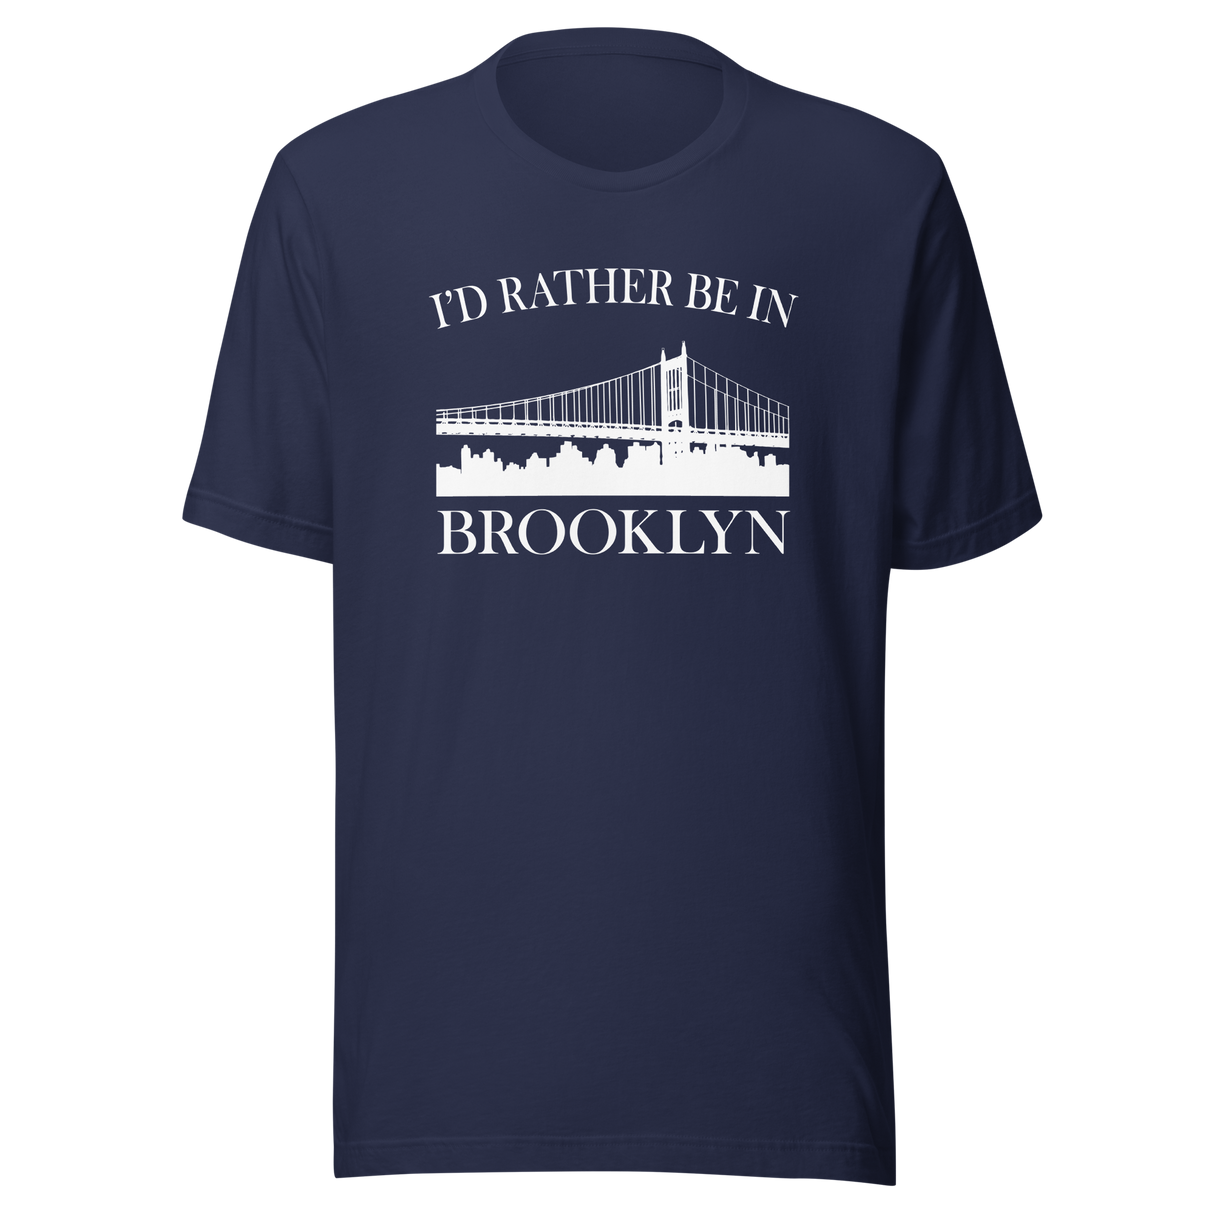 id-rather-be-in-brooklyn-brooklyn-tee-new-york-t-shirt-nyc-tee-gift-t-shirt-brooklyn-pride-tee#color_navy